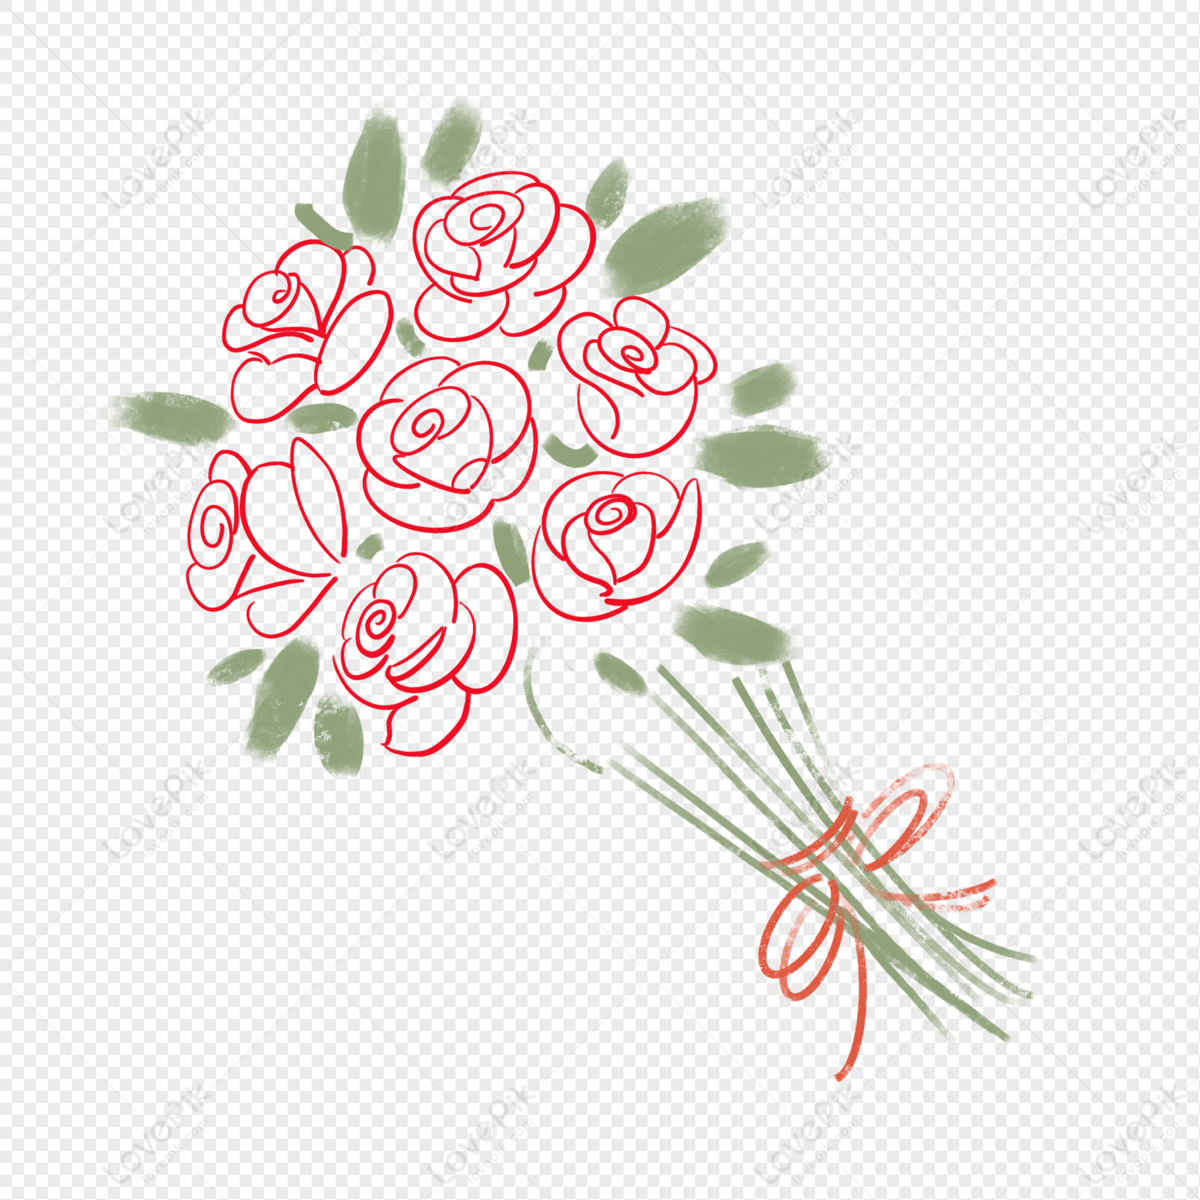 Hướng dẫn cách vẽ bó hoa hồng đơn giản cho người mới bắt đầu